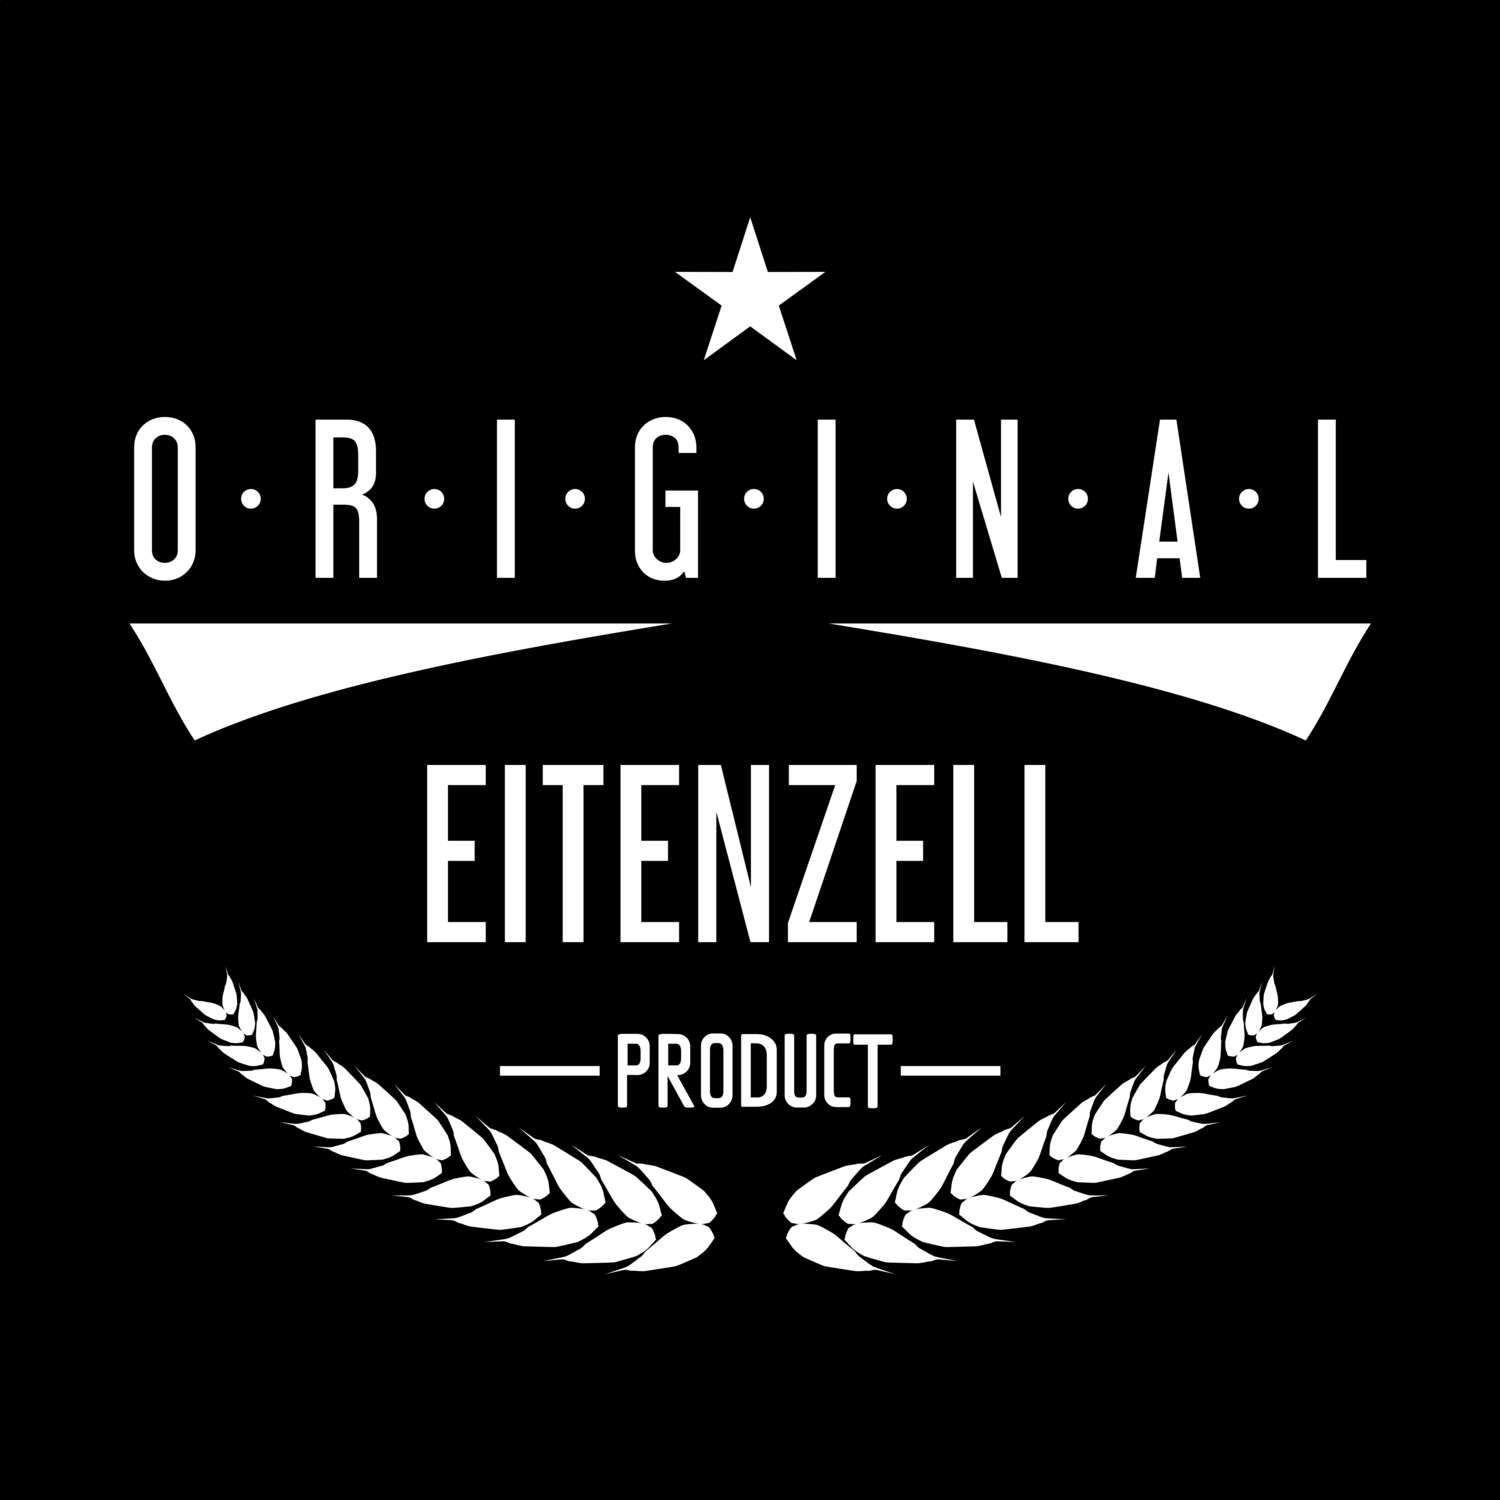 Eitenzell T-Shirt »Original Product«